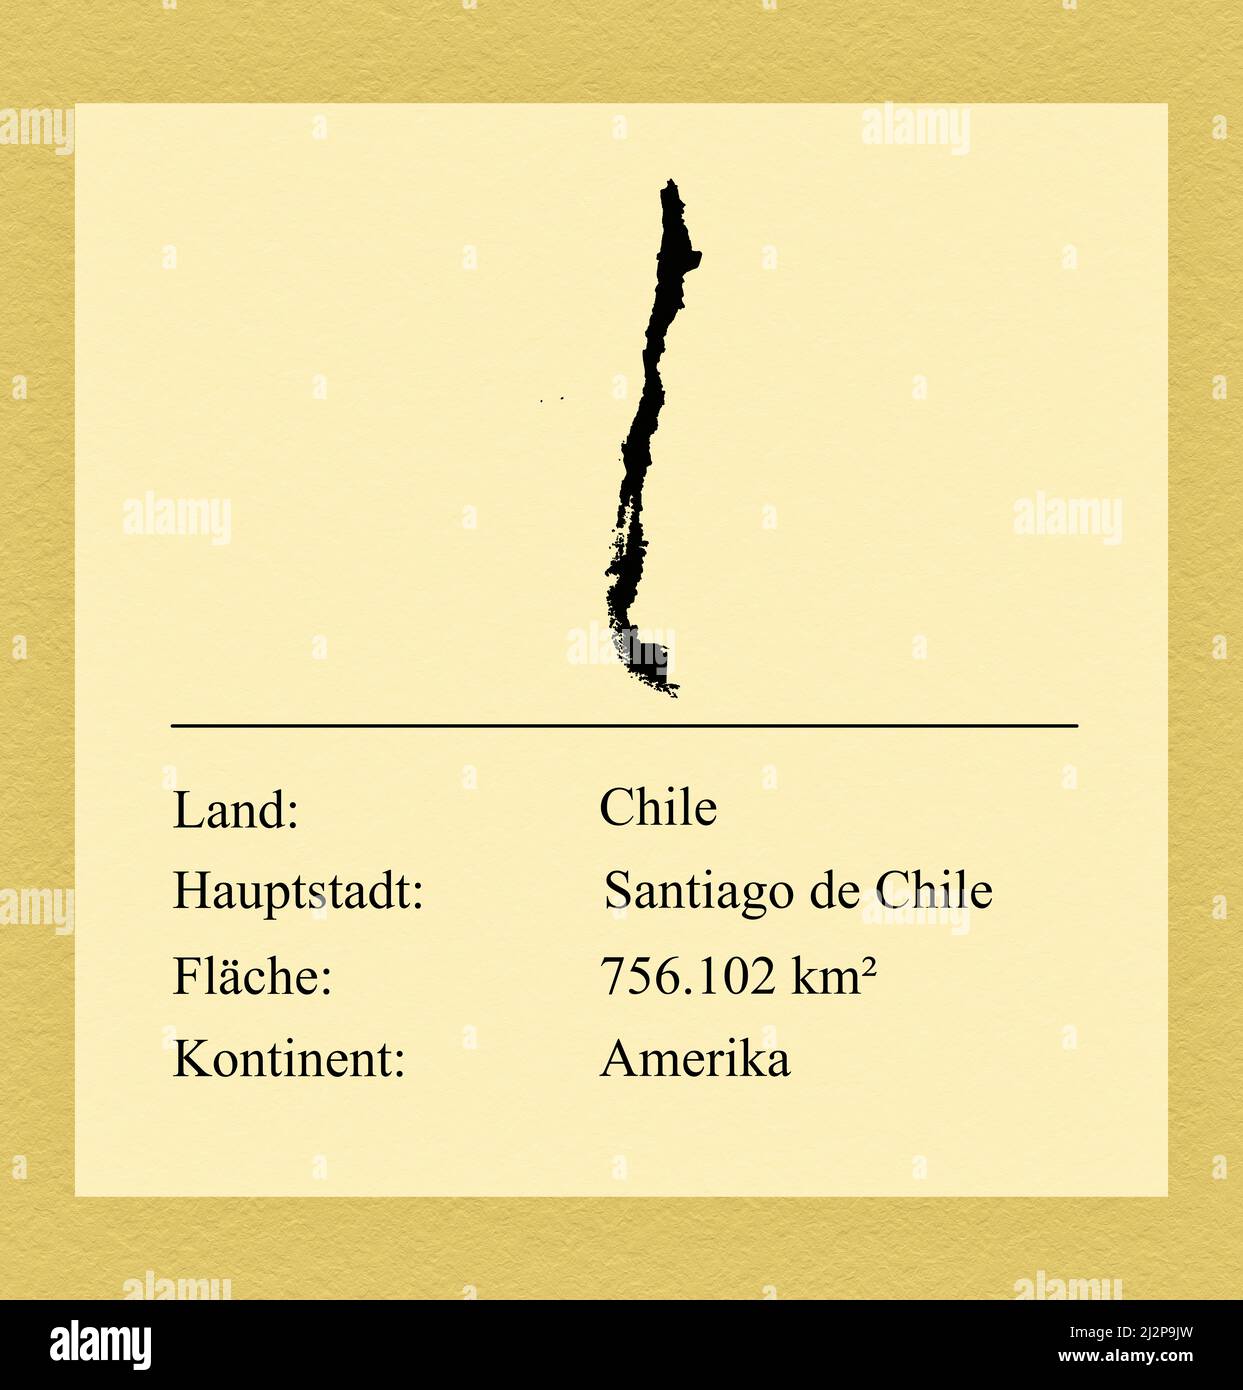 Umrisse des Landes Chile, darunter ein kleiner Steckbrief mit Ländernamen, Hauptstadt, Fläche und Kontinent Foto de stock